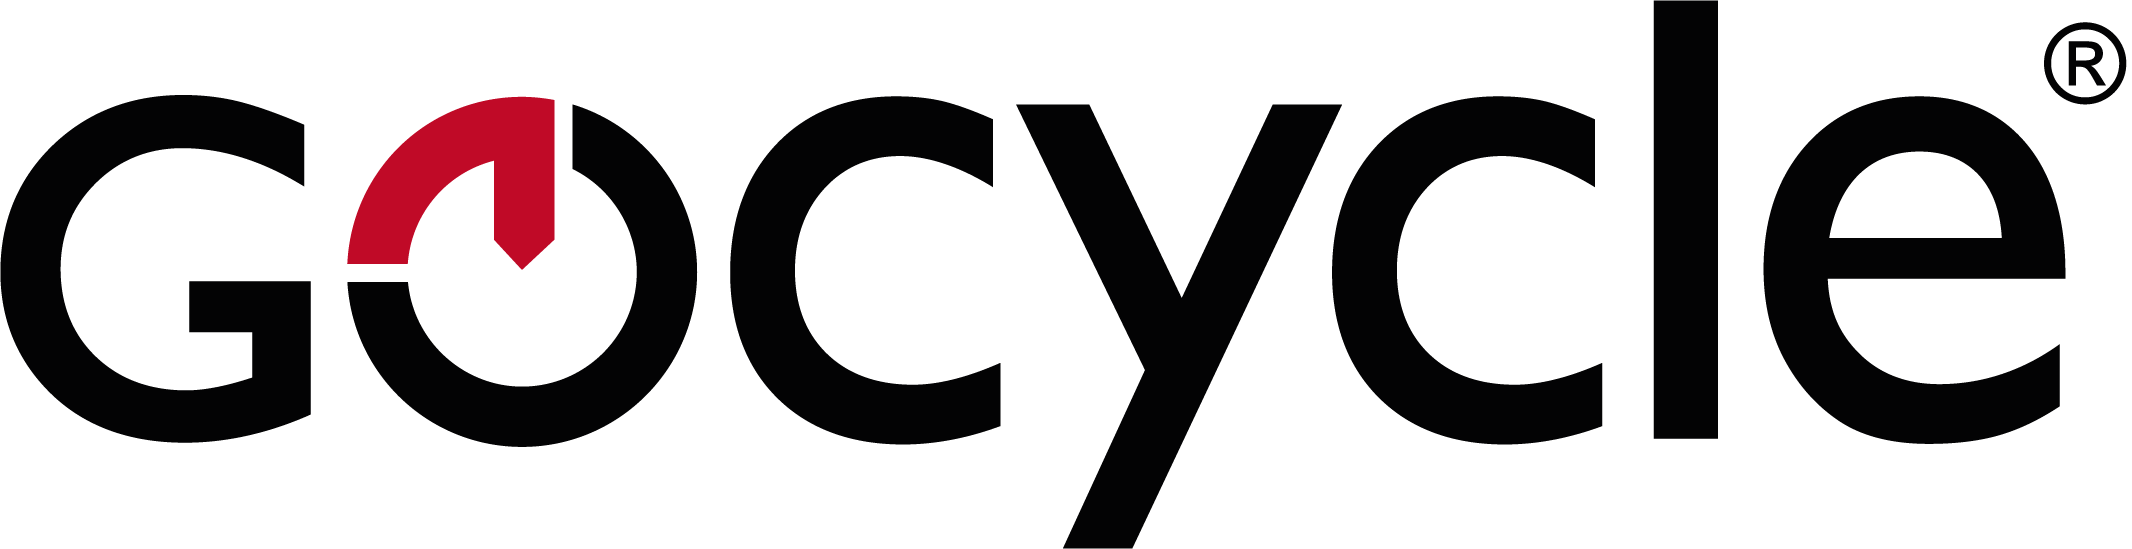 gocycle logo